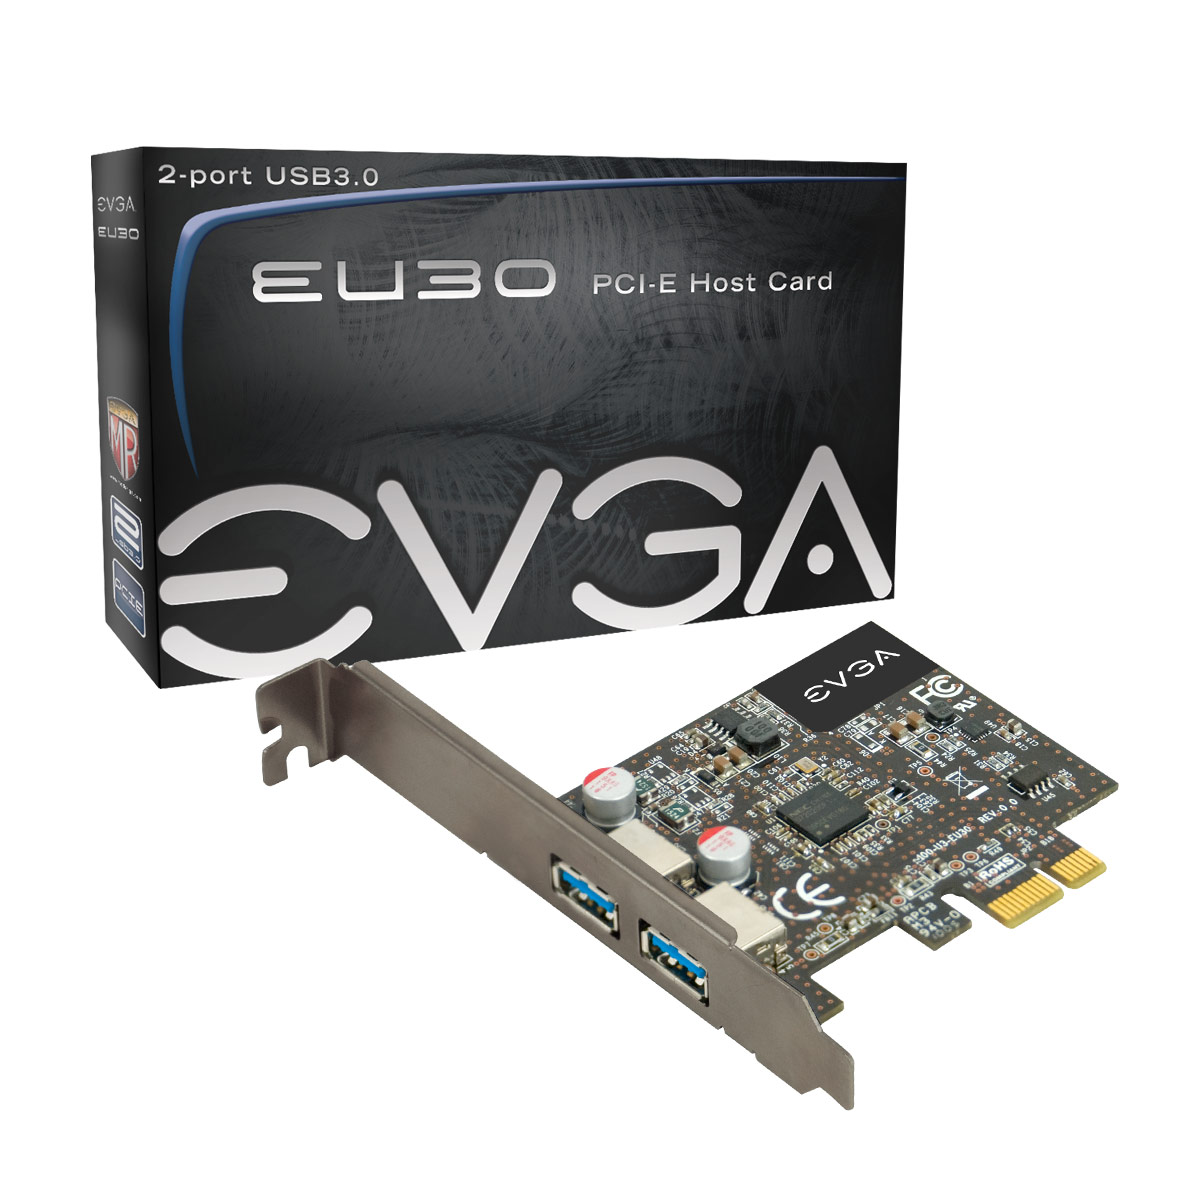 Immagine pubblicata in relazione al seguente contenuto: EVGA realizza EU30, un controller USB 3.0 per bus PCI-Express | Nome immagine: news13273_1.jpg